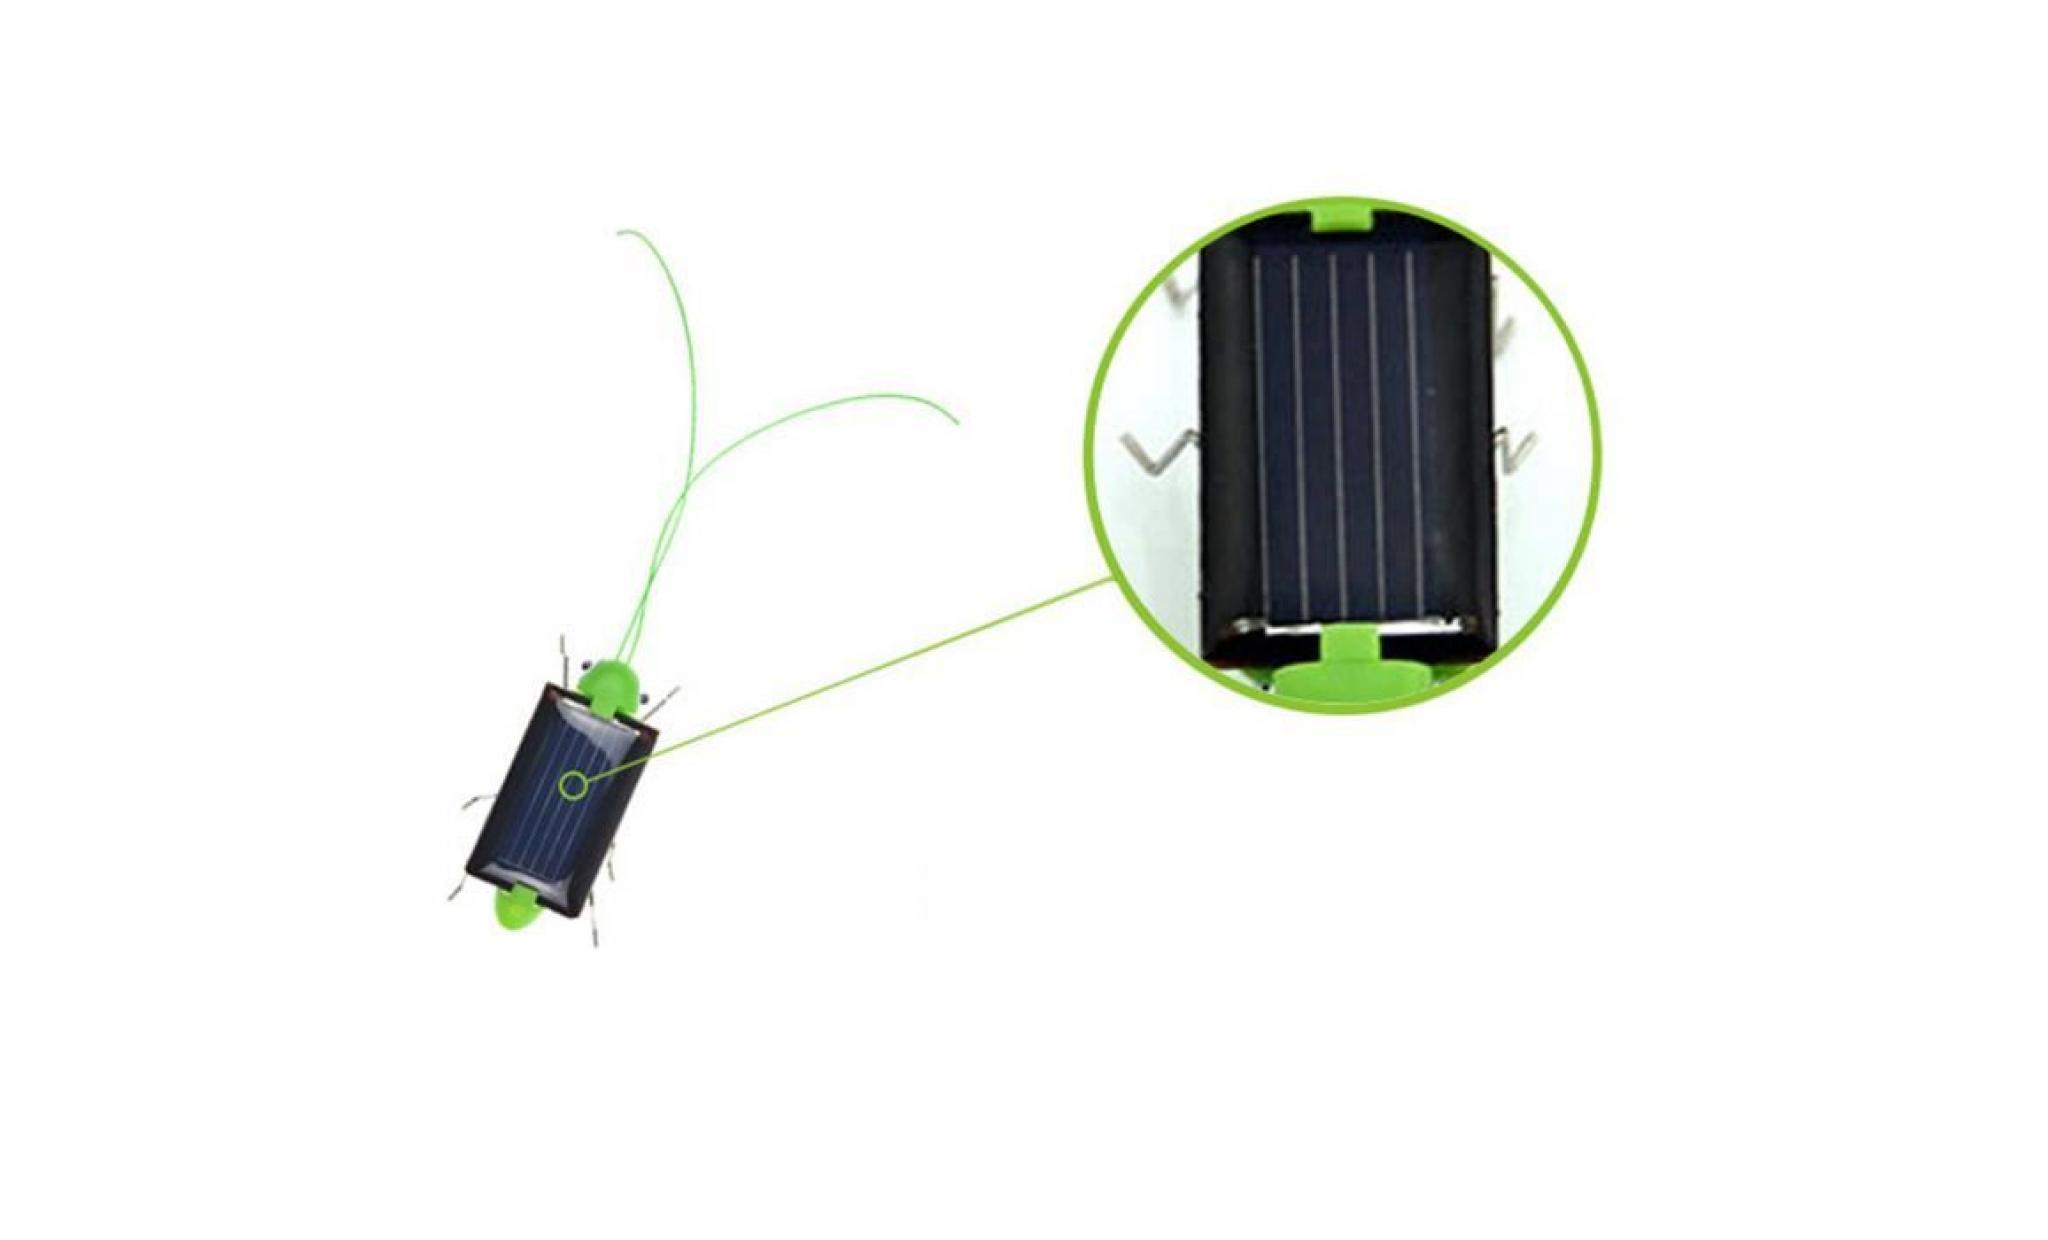 Éducation à énergie solaire grasshopper robot jouet solaire gadget jouet cadeau@liy71208005 pas cher